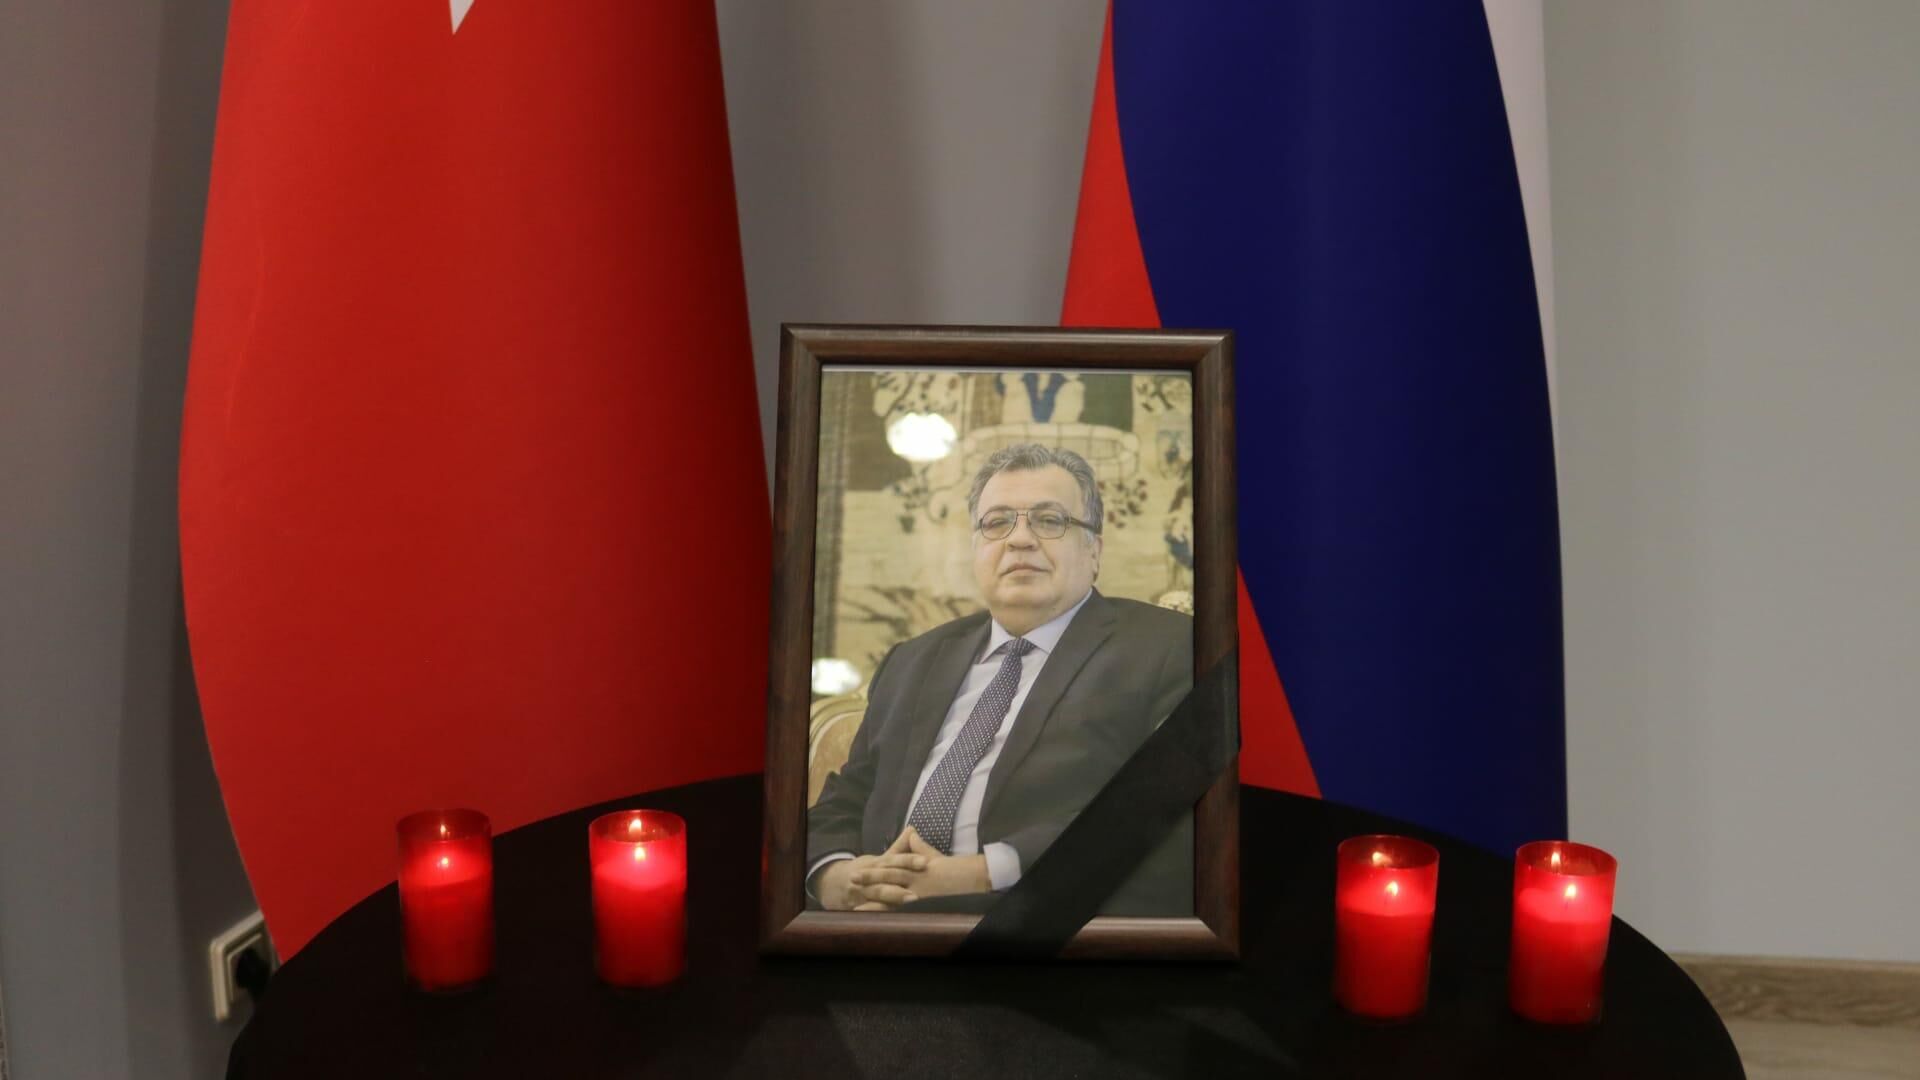 Suikast sonucu hayatın kaybeden Andrey Karlov, ölümünün beşinci yılında Rusya’nın Ankara Büyükelçiliği’nde düzenlenen törenle anıldı. - Sputnik Türkiye, 1920, 19.12.2021